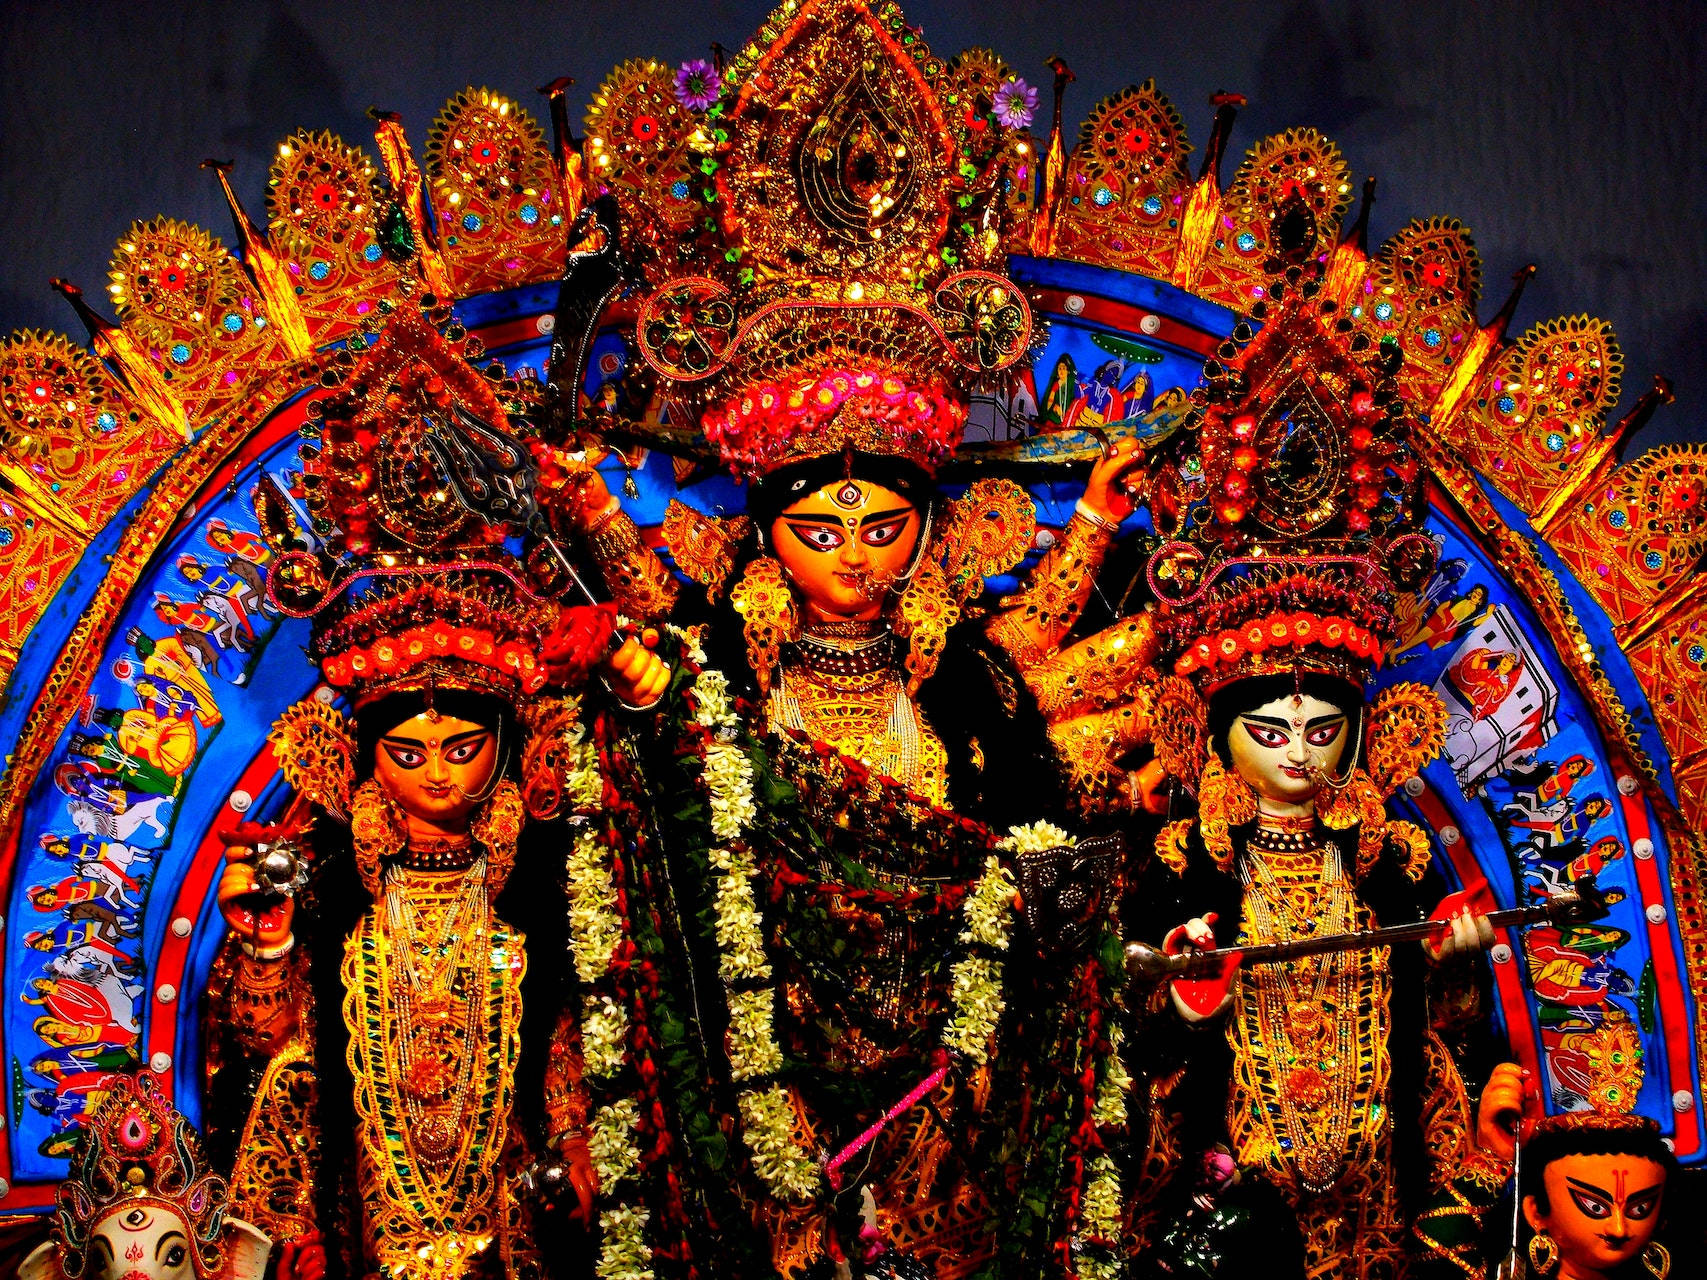 Hinduistiskagudinnan Durga. Wallpaper